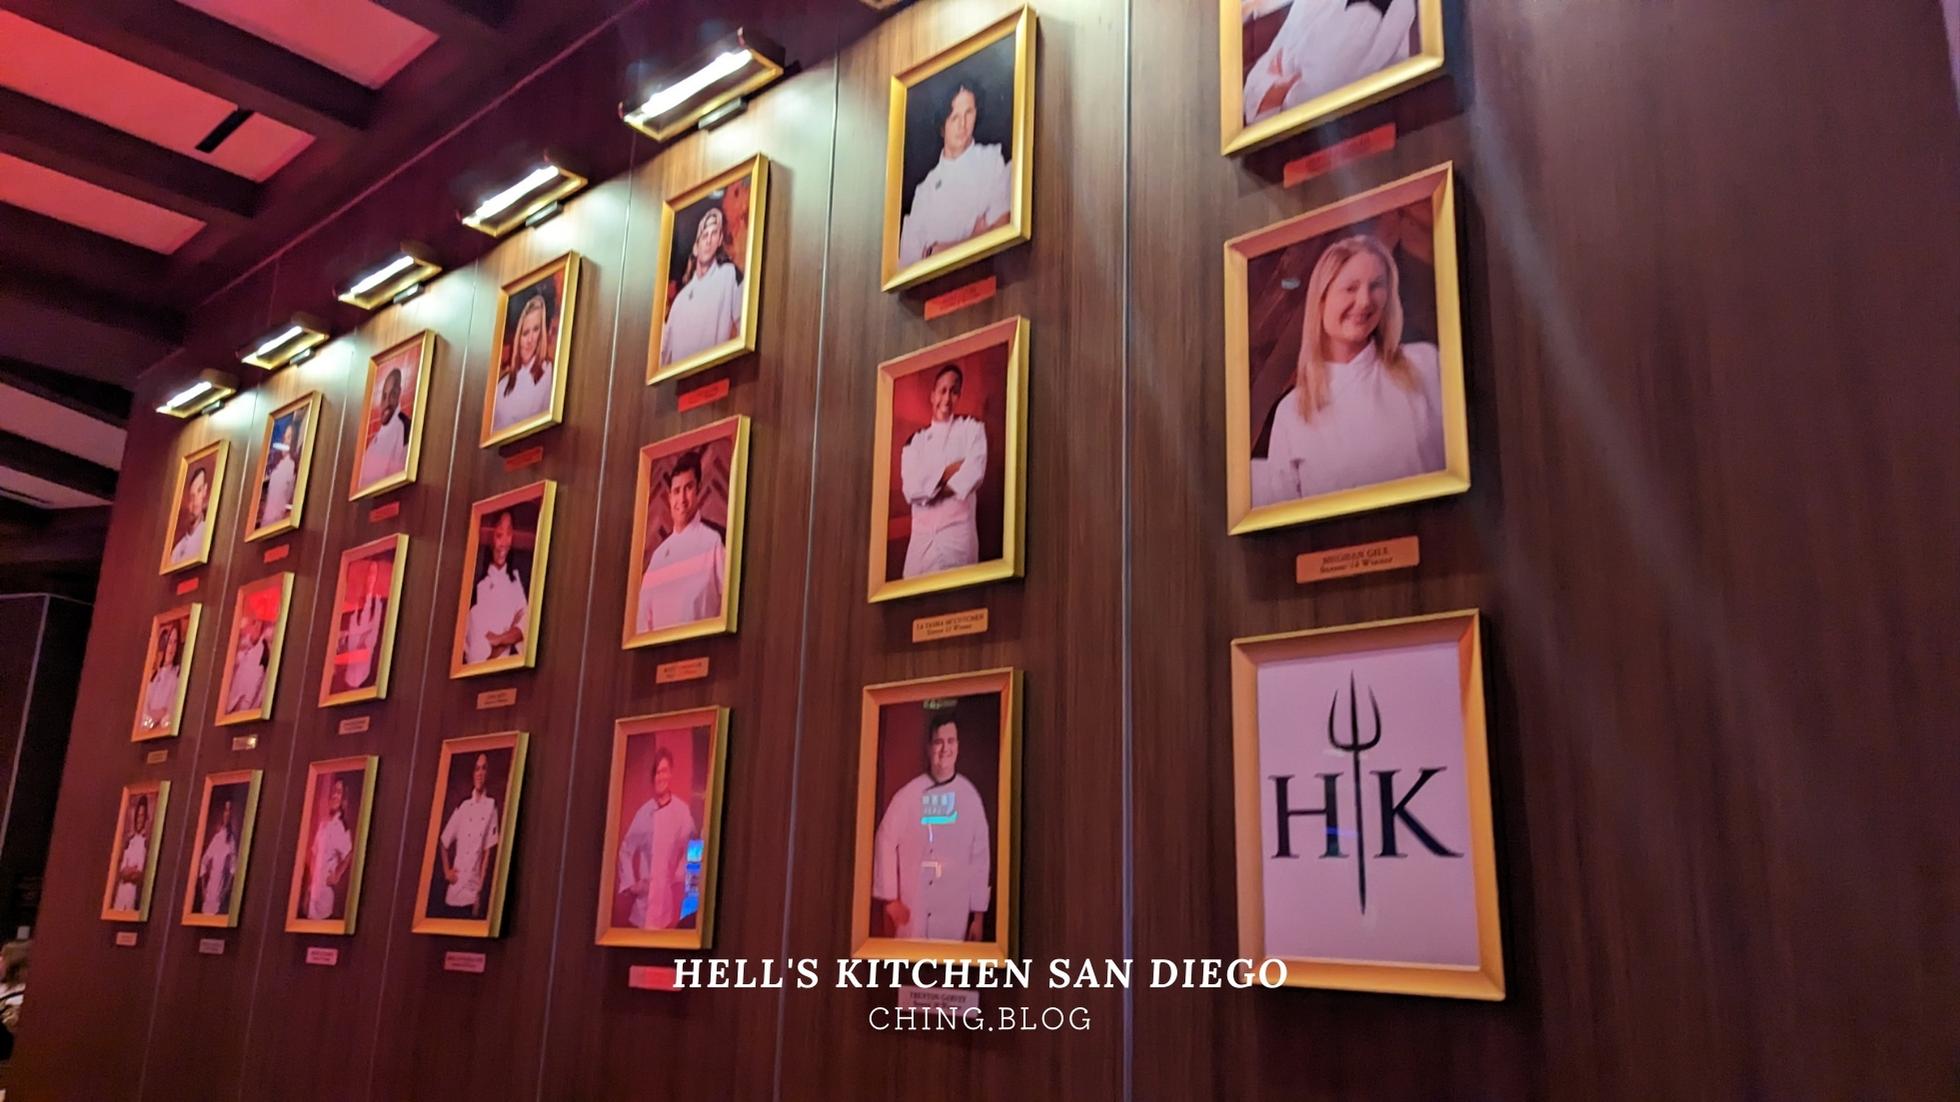 聖地牙哥地獄廚房》朝聖！加州第一家地獄廚房開幕！用餐心得、指南